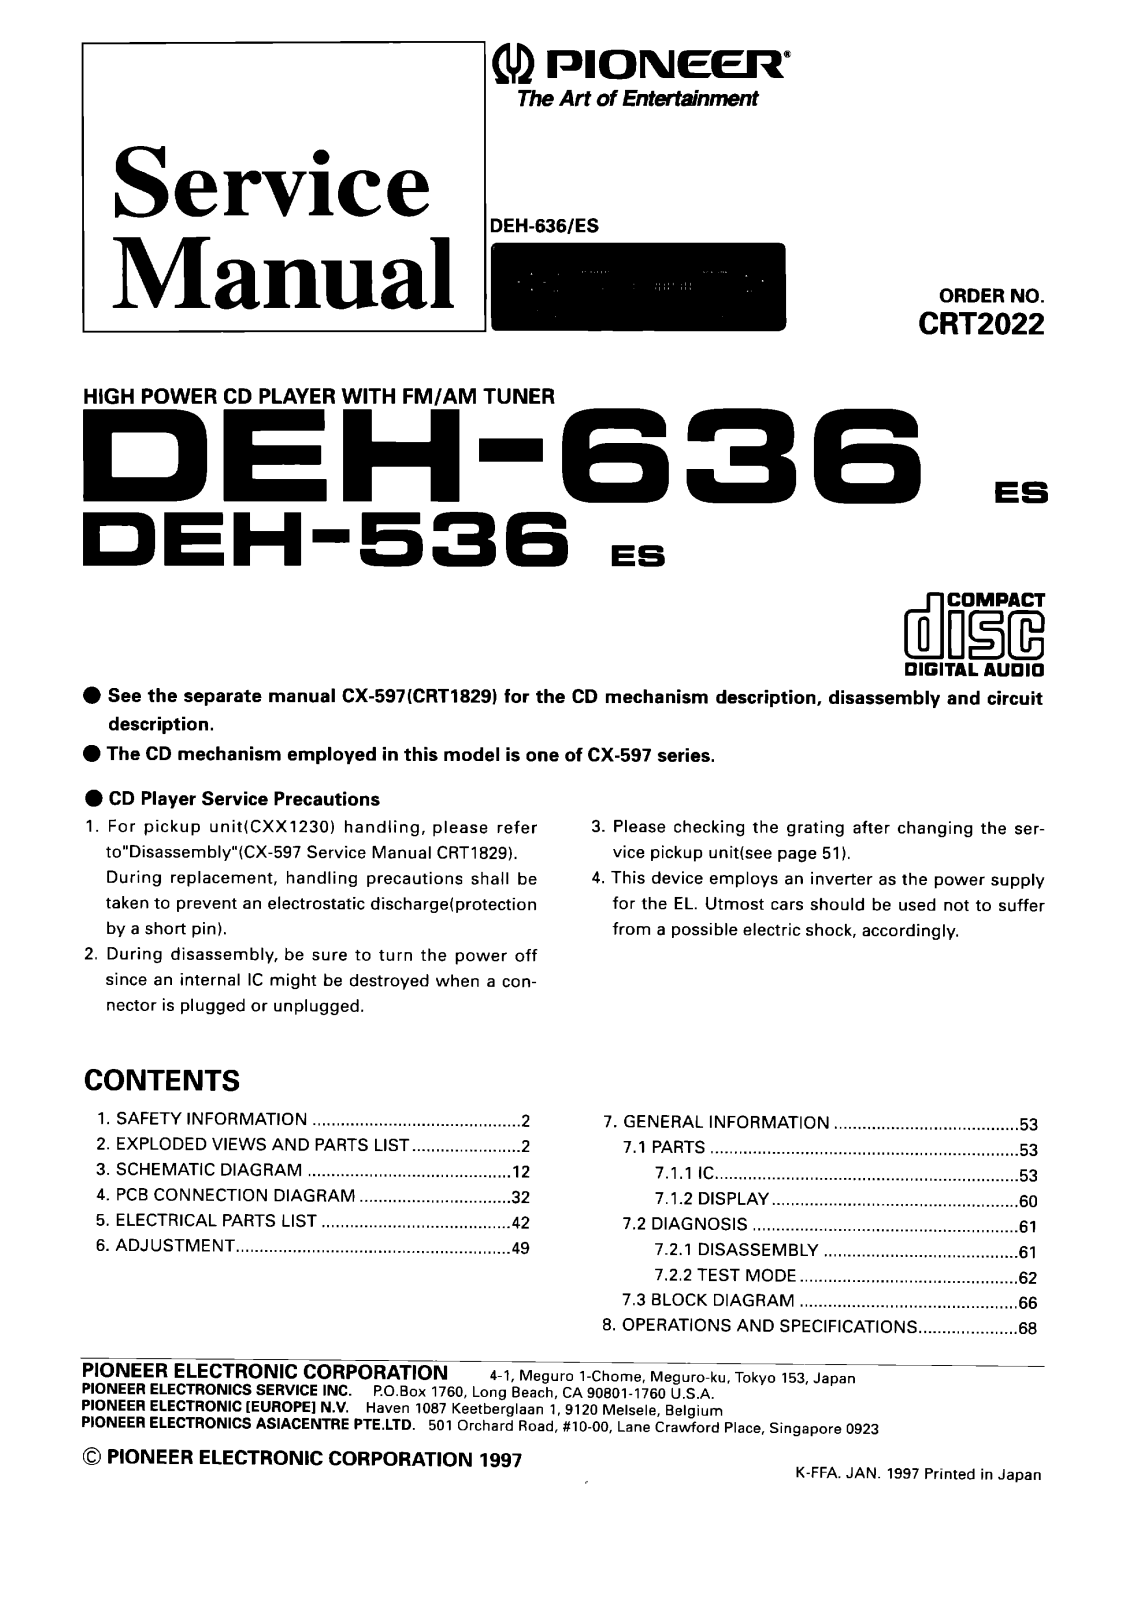 Pioneer DEH-536, DEH-636 Service manual